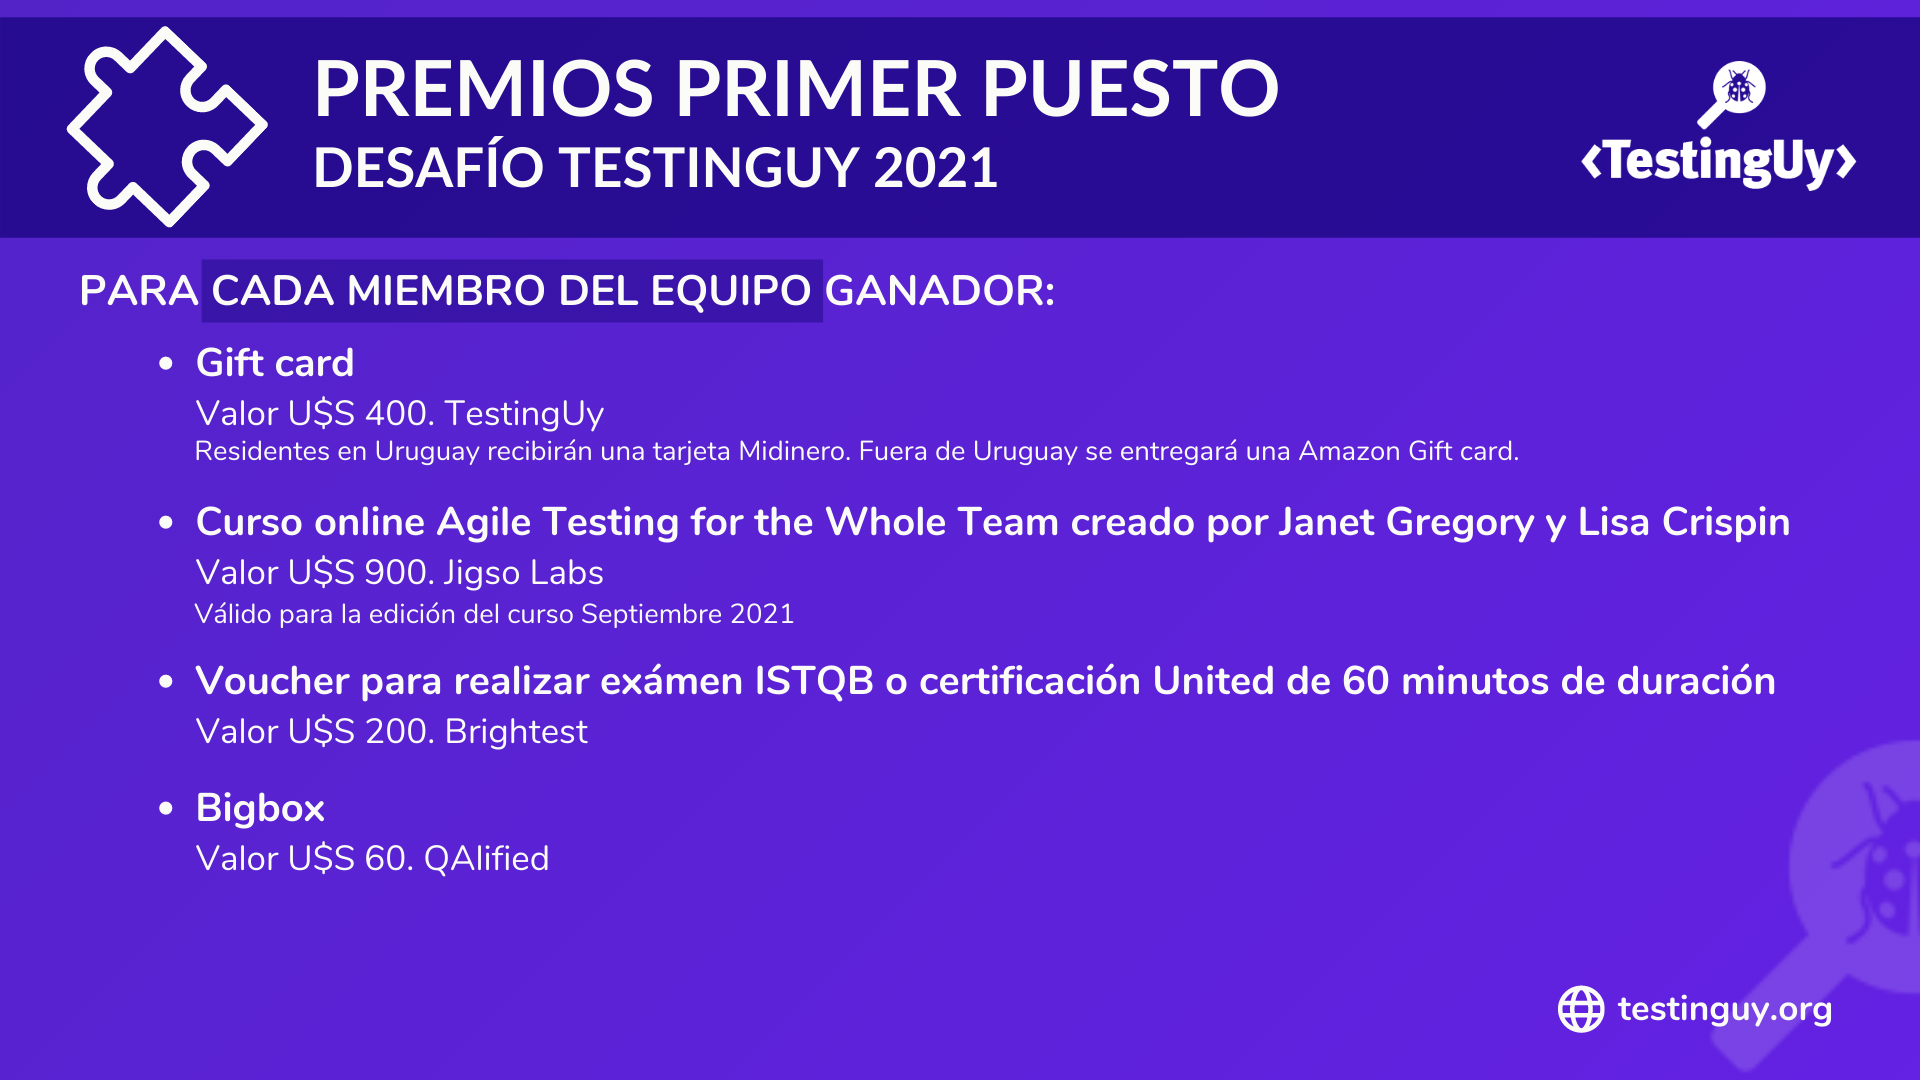 Desafio TestingUy 2021 - Premios Primer puesto